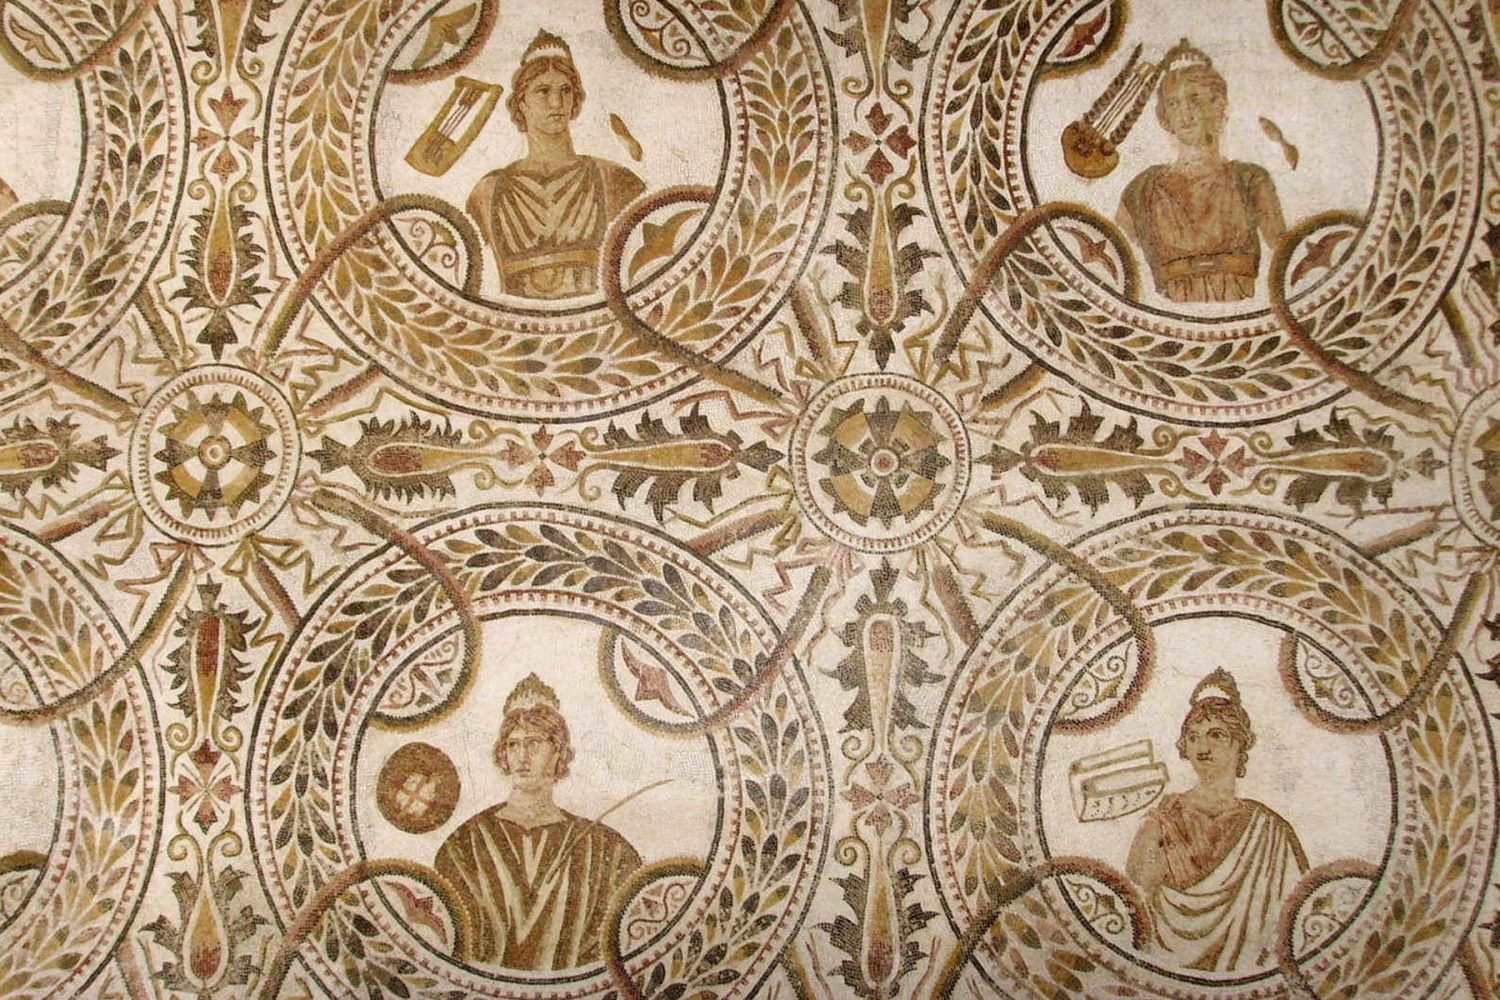 Cultural trip: El Djem mosaic museum